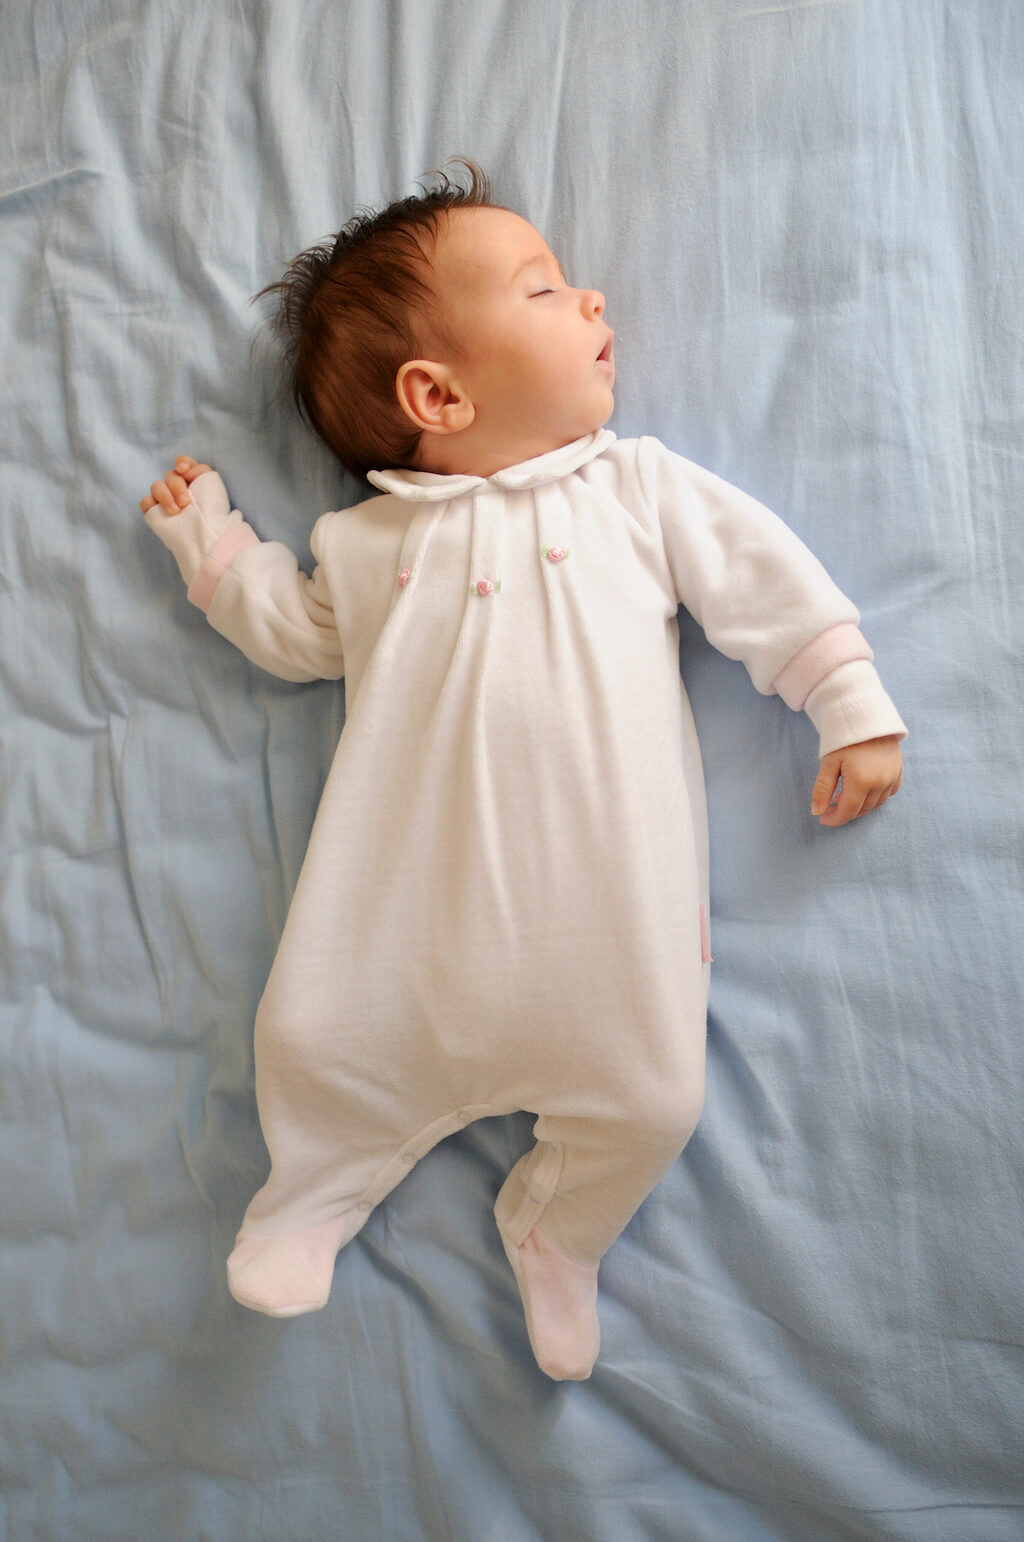 מחזורי שינה של תינוקות